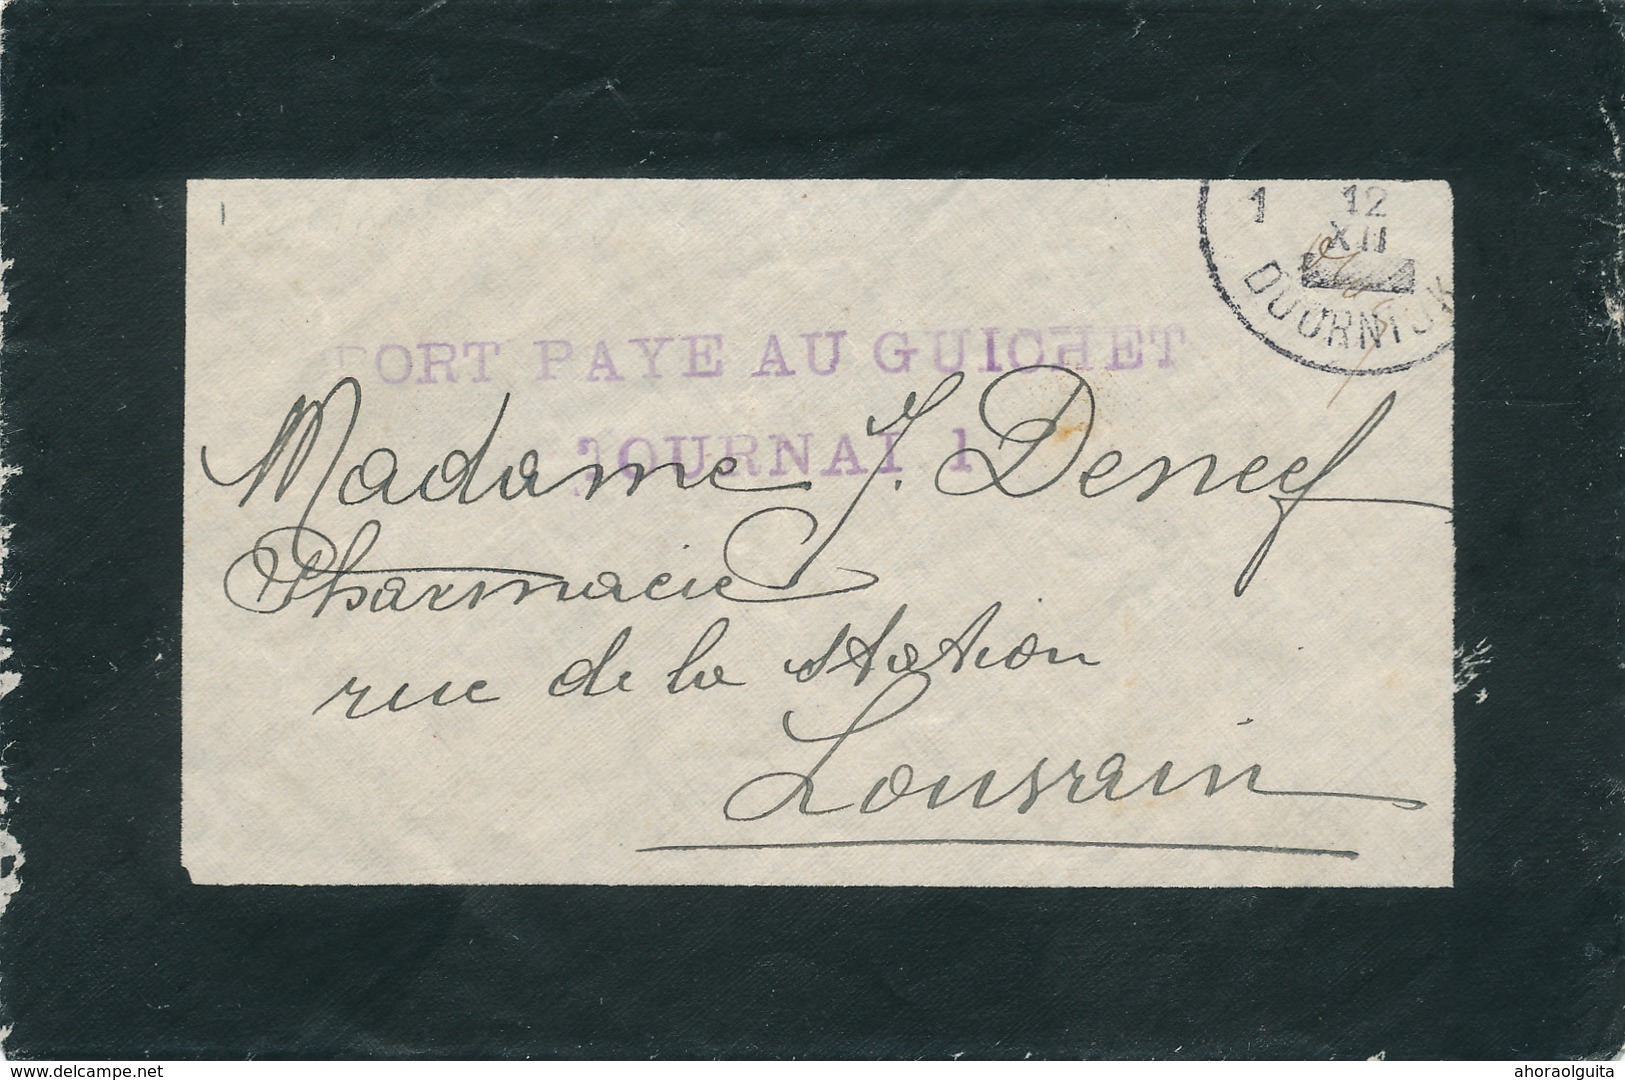 104/29 - Enveloppe De Deuil Cachets De FORTUNE TOURNAI 12 XII (1918) Et Port Payé Au Guichet TOURNAU 1 - Fortuna (1919)